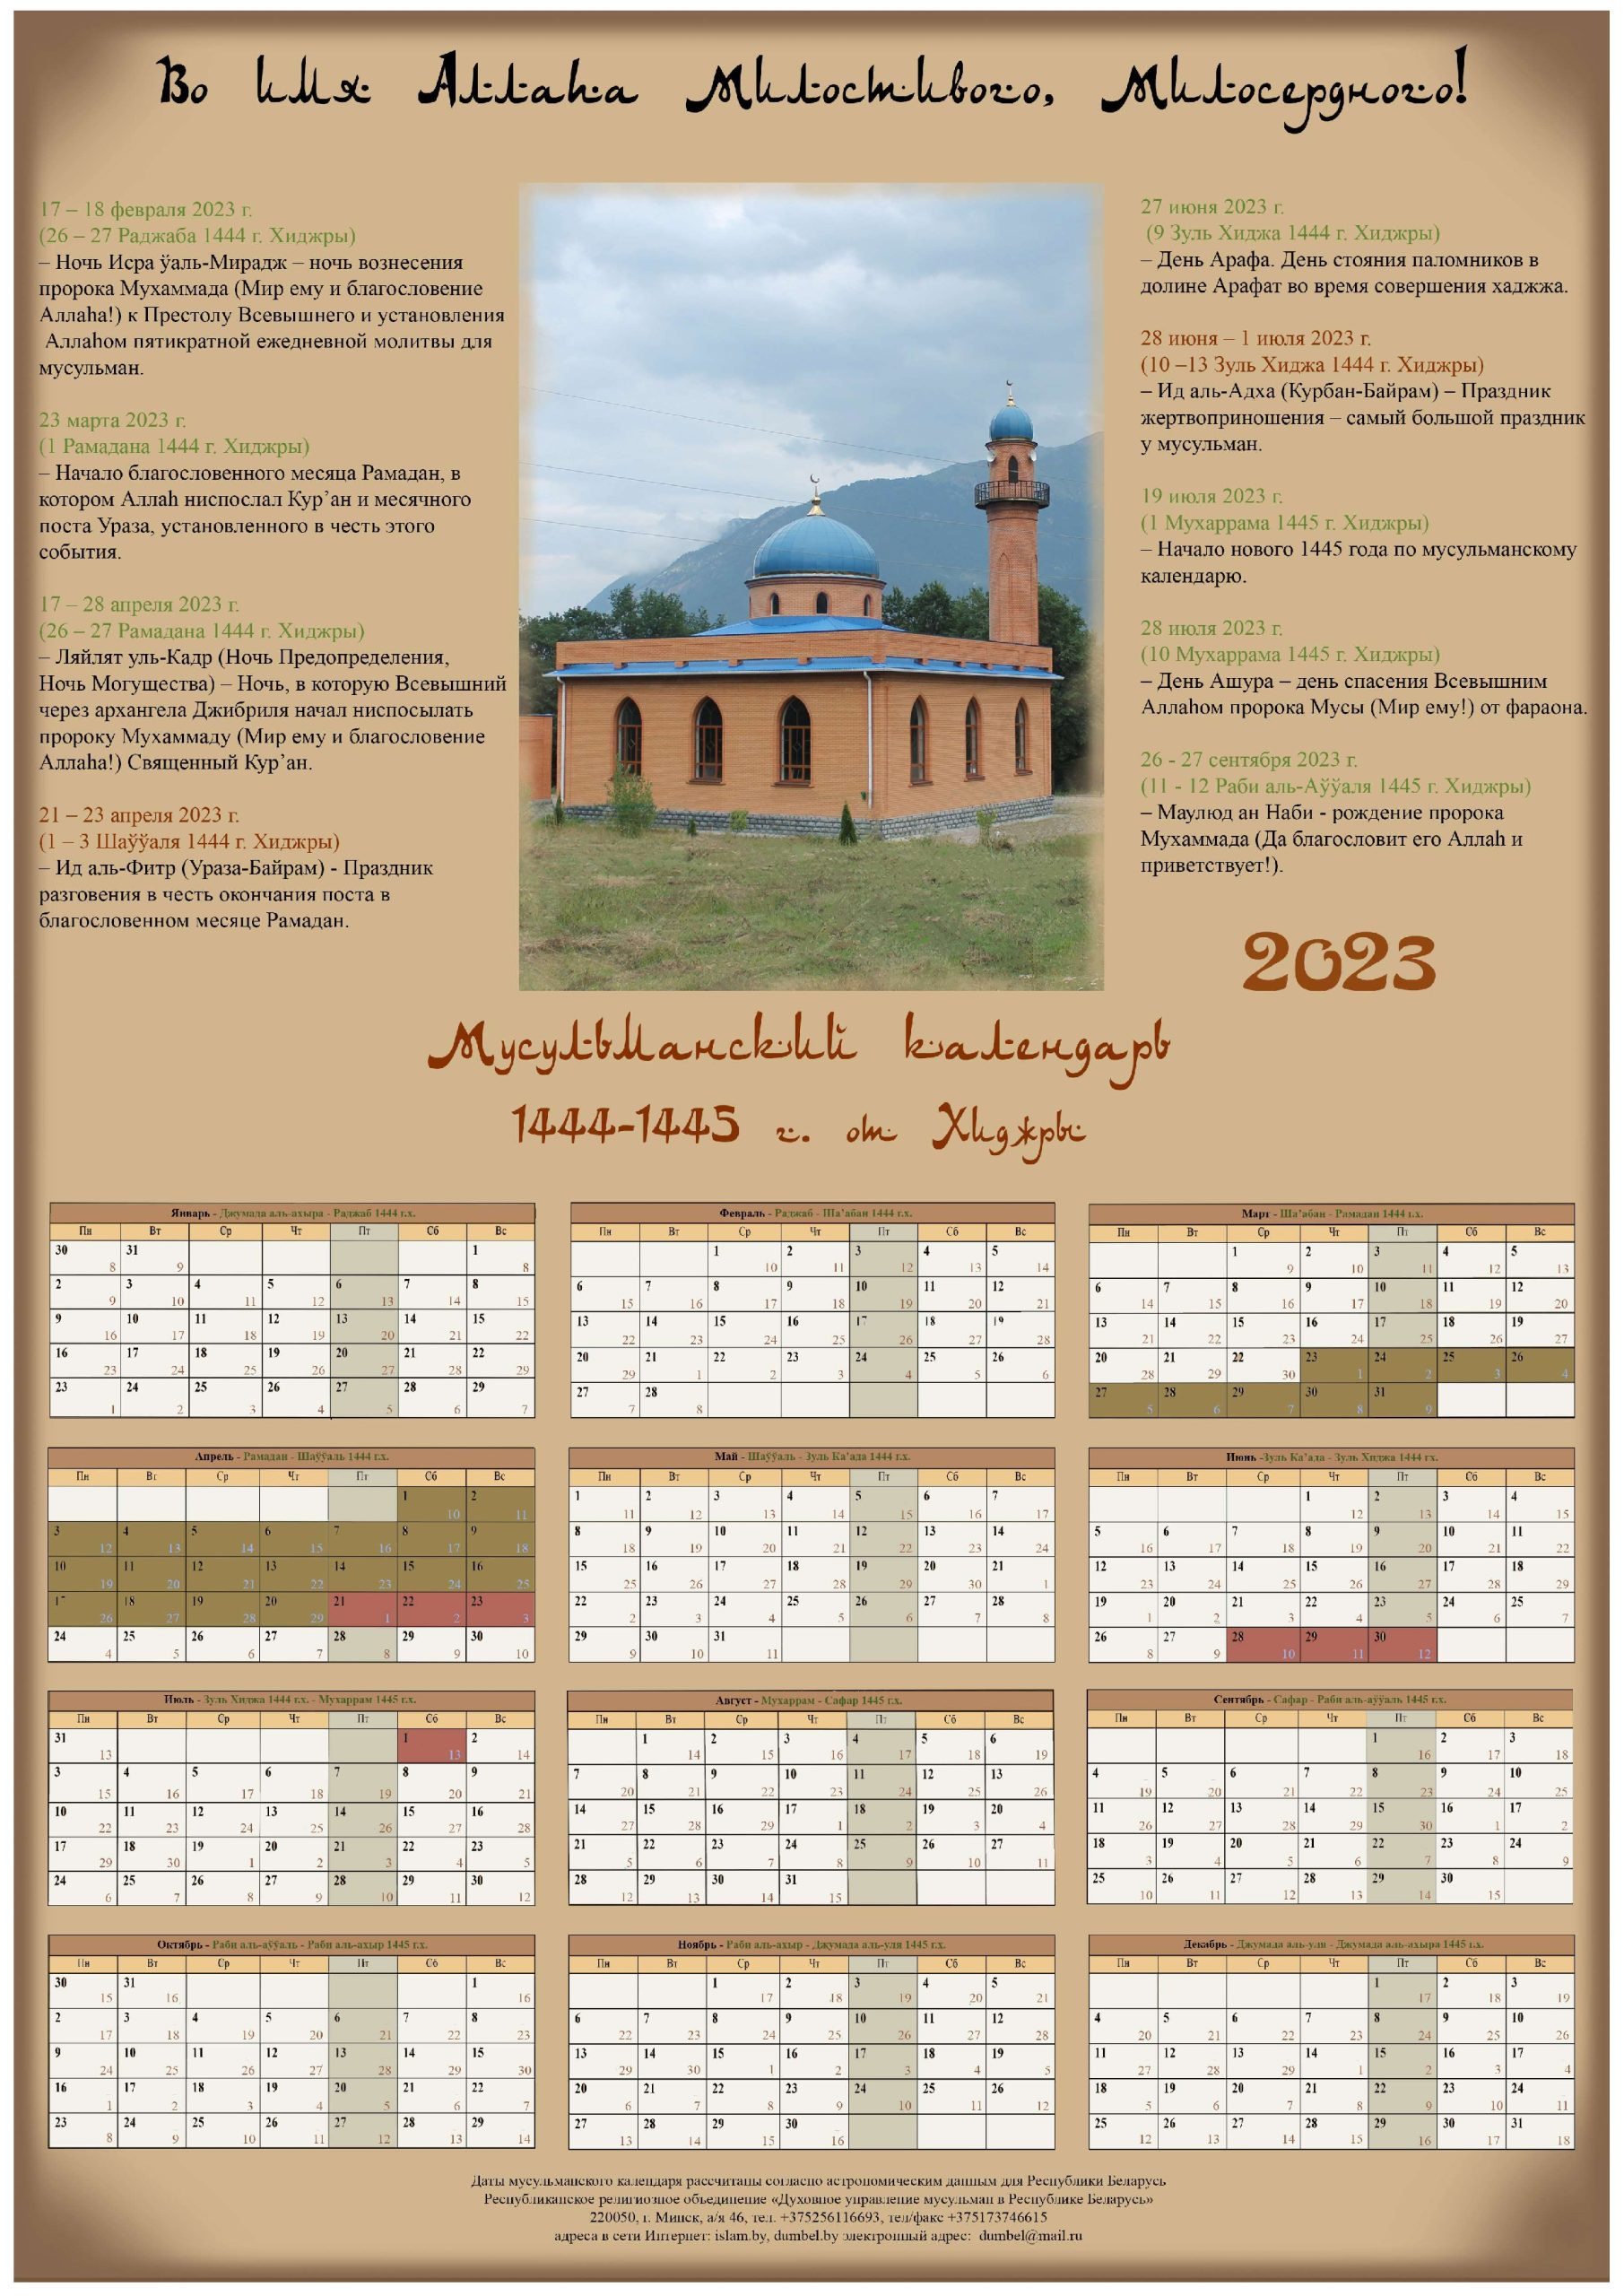 Когда начинается рамадан в 2023. Мусульманский календарь на 2023 год с праздниками. Исламский календарь (Хиджра) на 2023. Исламский календарь на 2023 год. Мусульманский календарь 2023.